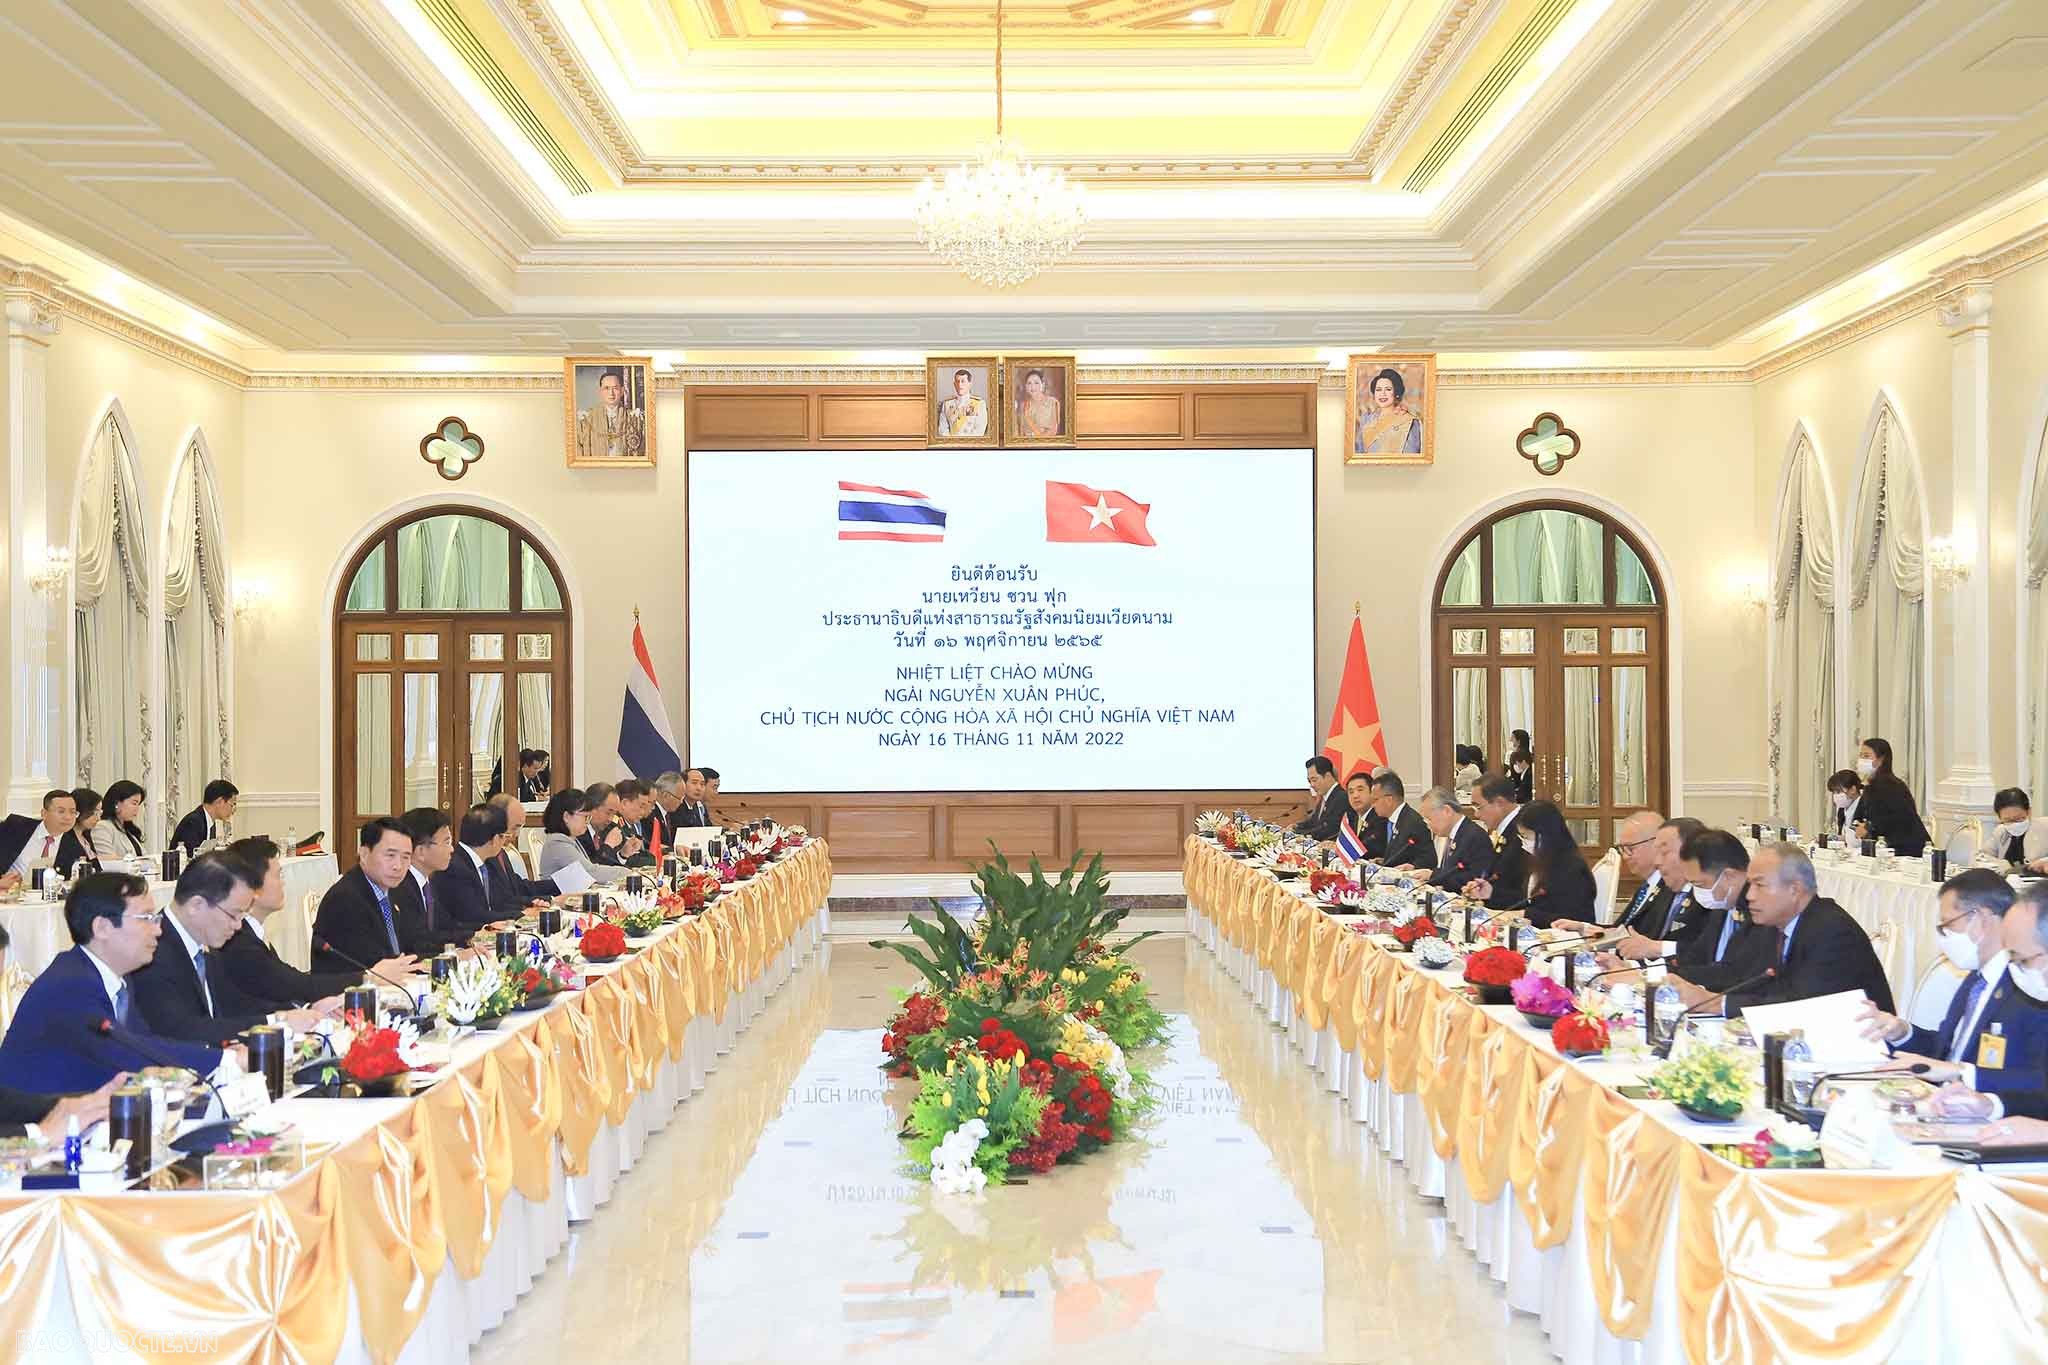 Sau lễ đón, Chủ tịch nước Nguyễn Xuân Phúc và Thủ tướng bắt đầu cuộc hội đàm, trao đổi phương hướng và thống nhất các biện pháp thúc đẩy hợp tác giữa Việt Nam và Thái Lan trong thời gian tới.